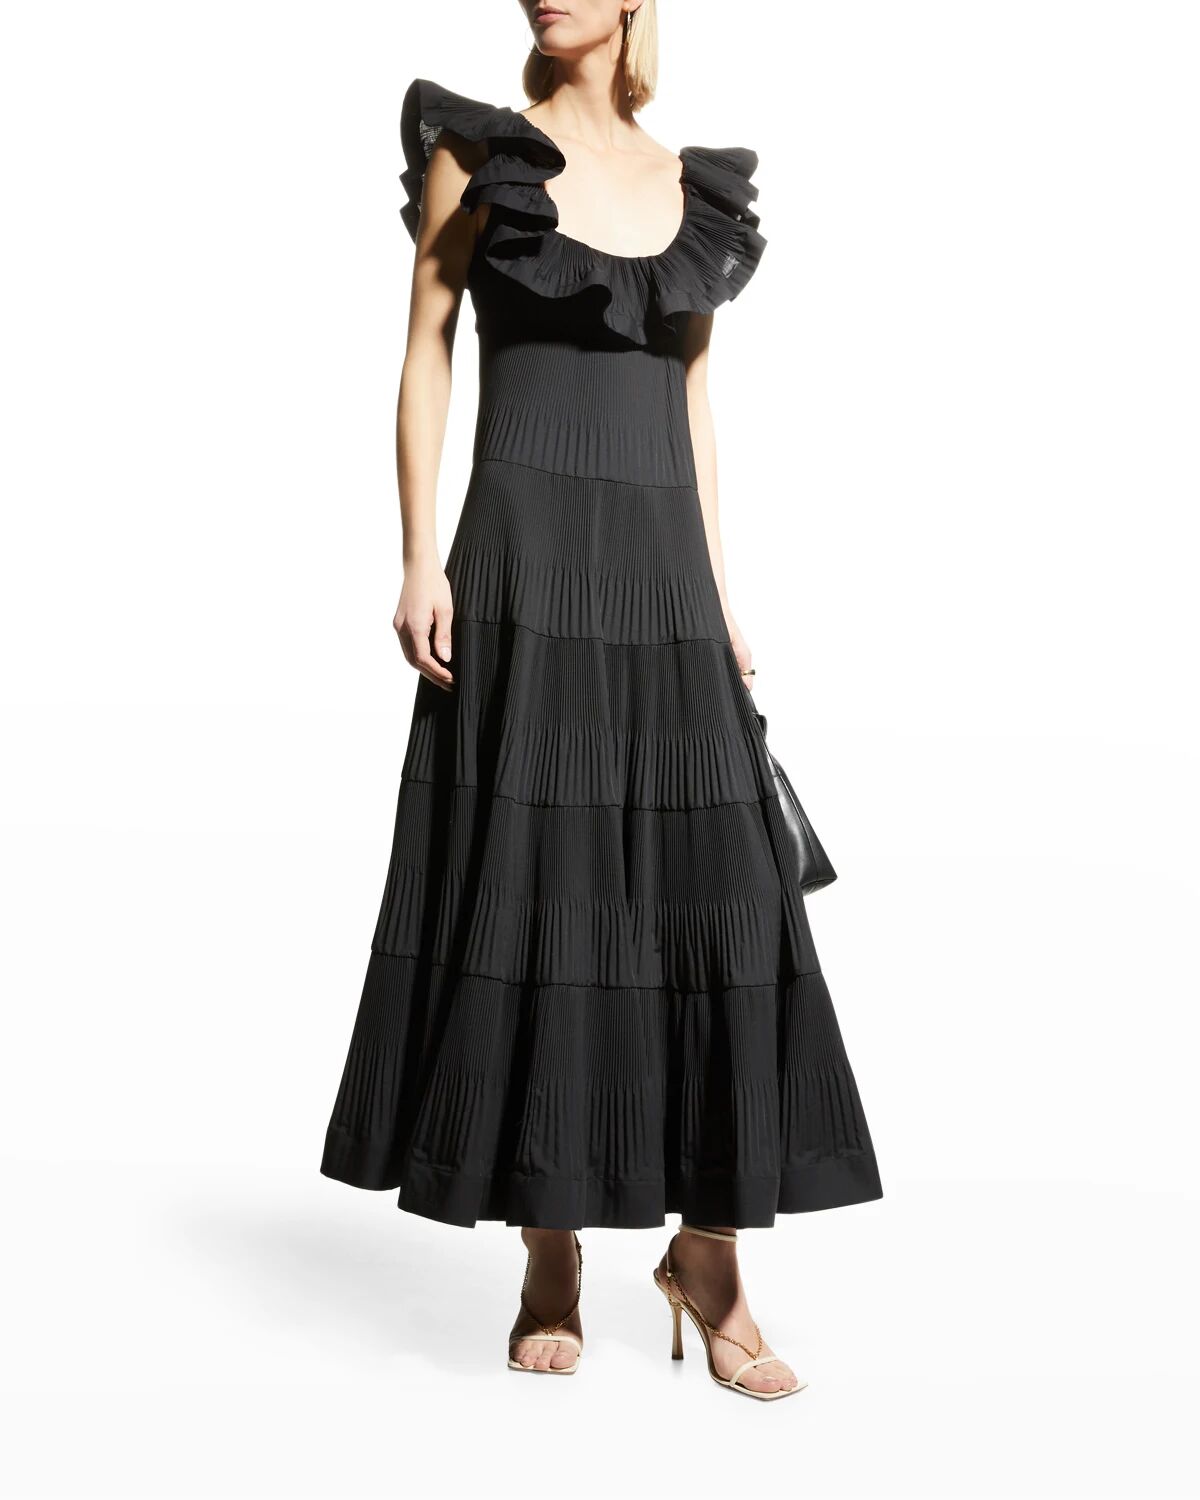 MeimeiJ Sleeveless Ruffle Pleated Dress - Size: 38 IT (2 US) - ME20C2